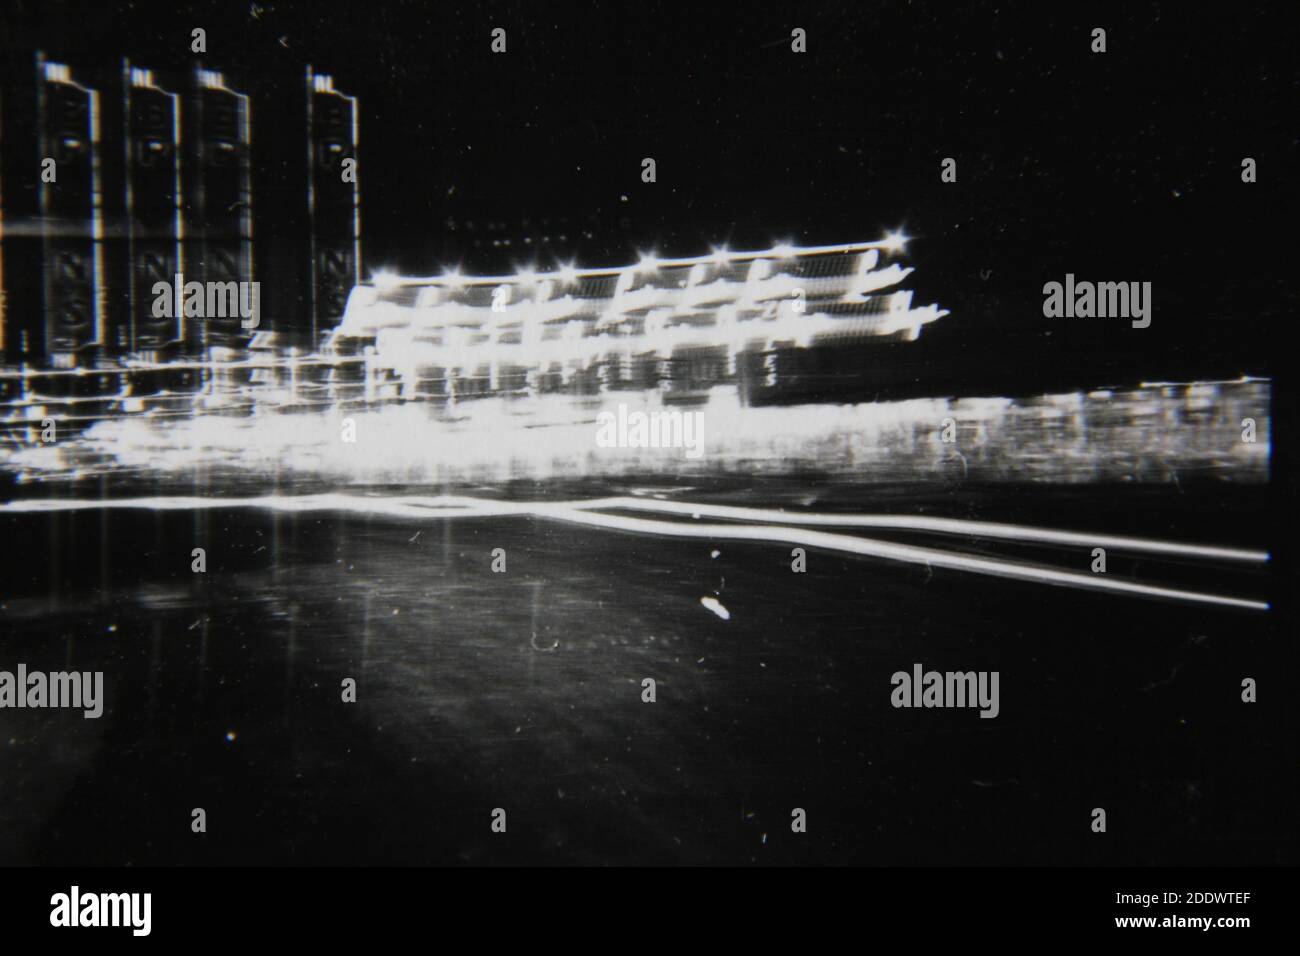 Feine Vintage-Schwarz-Weiß-Fotografie der 1970er Jahre von den hellen Lichtern der Stadt Streifen über den Rahmen. Stockfoto